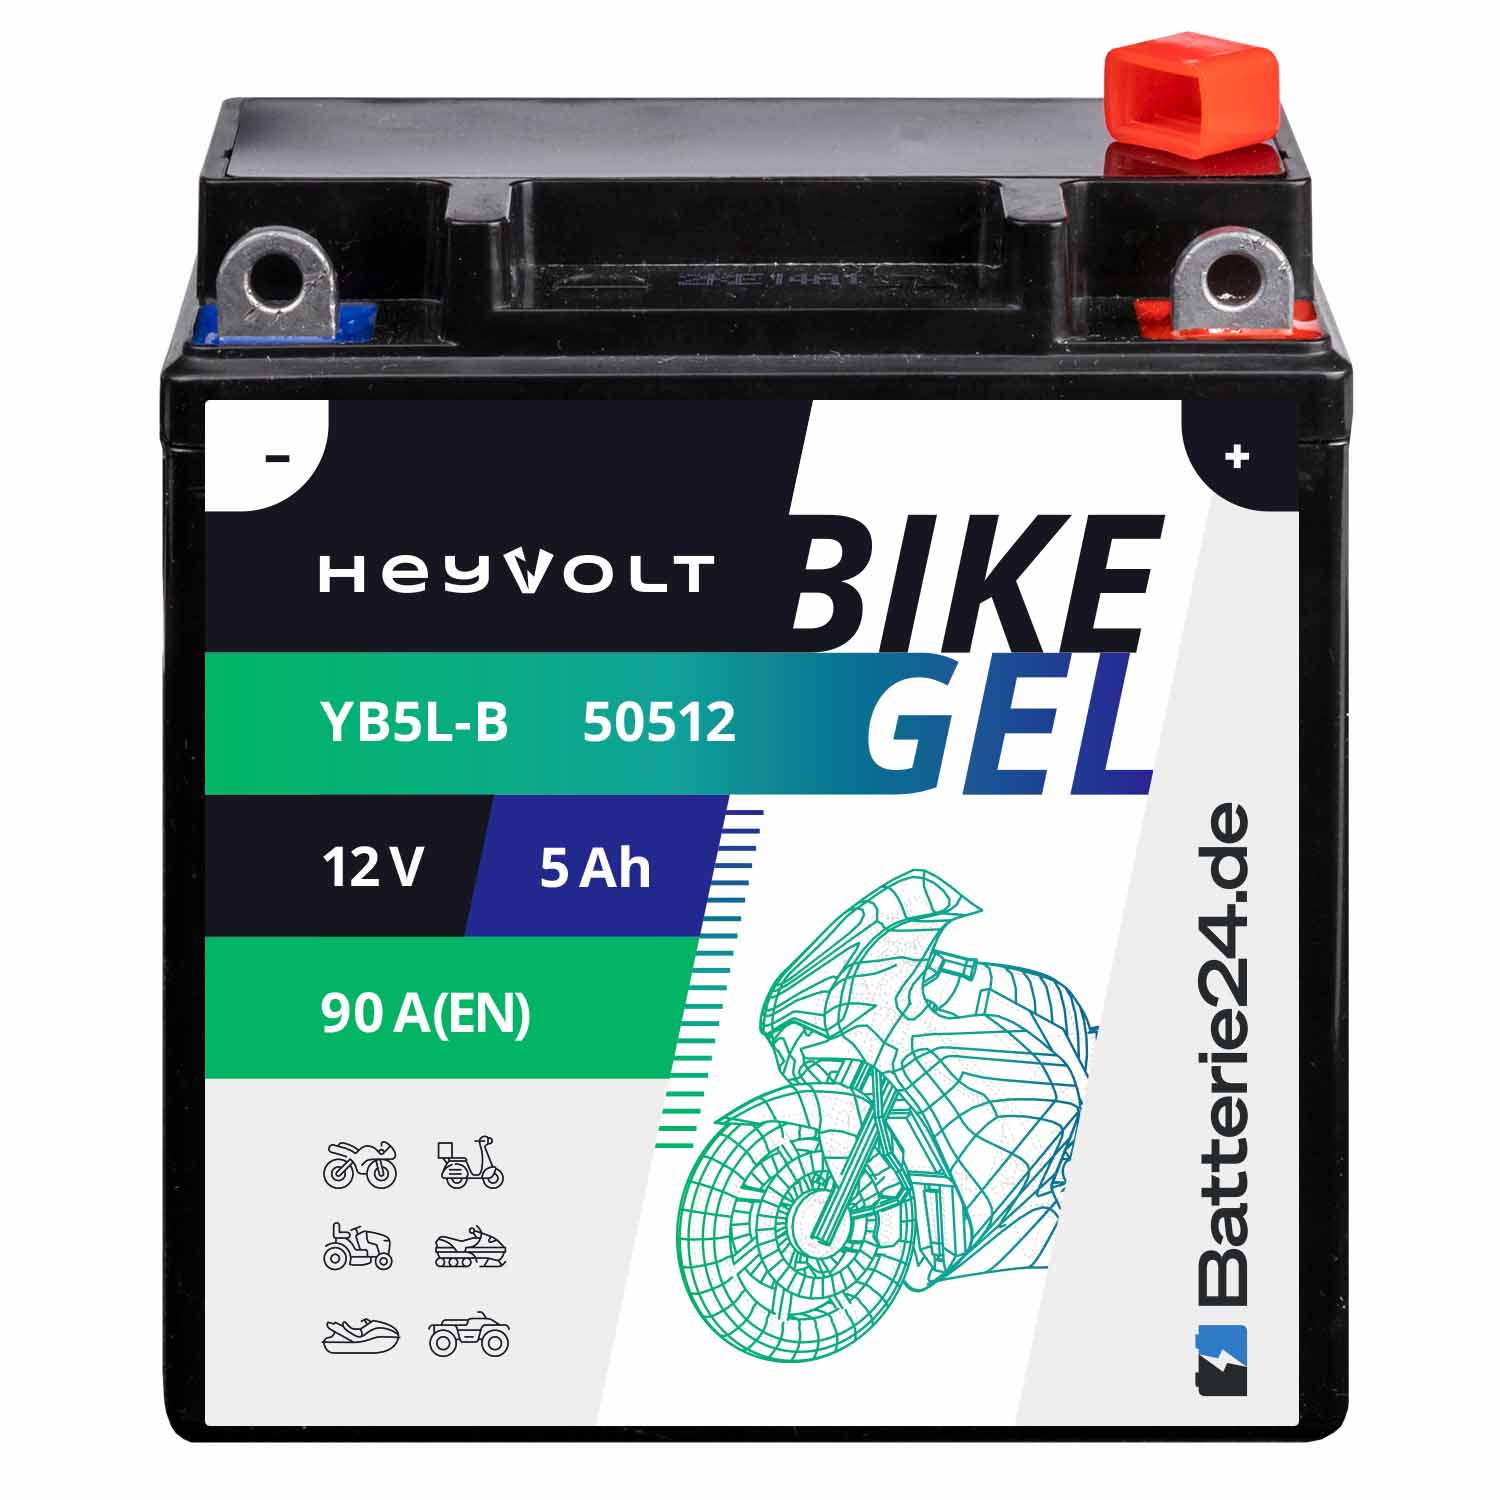 HeyVolt BIKE GEL Motorradbatterie YB5L-B 50512 12V 5Ah